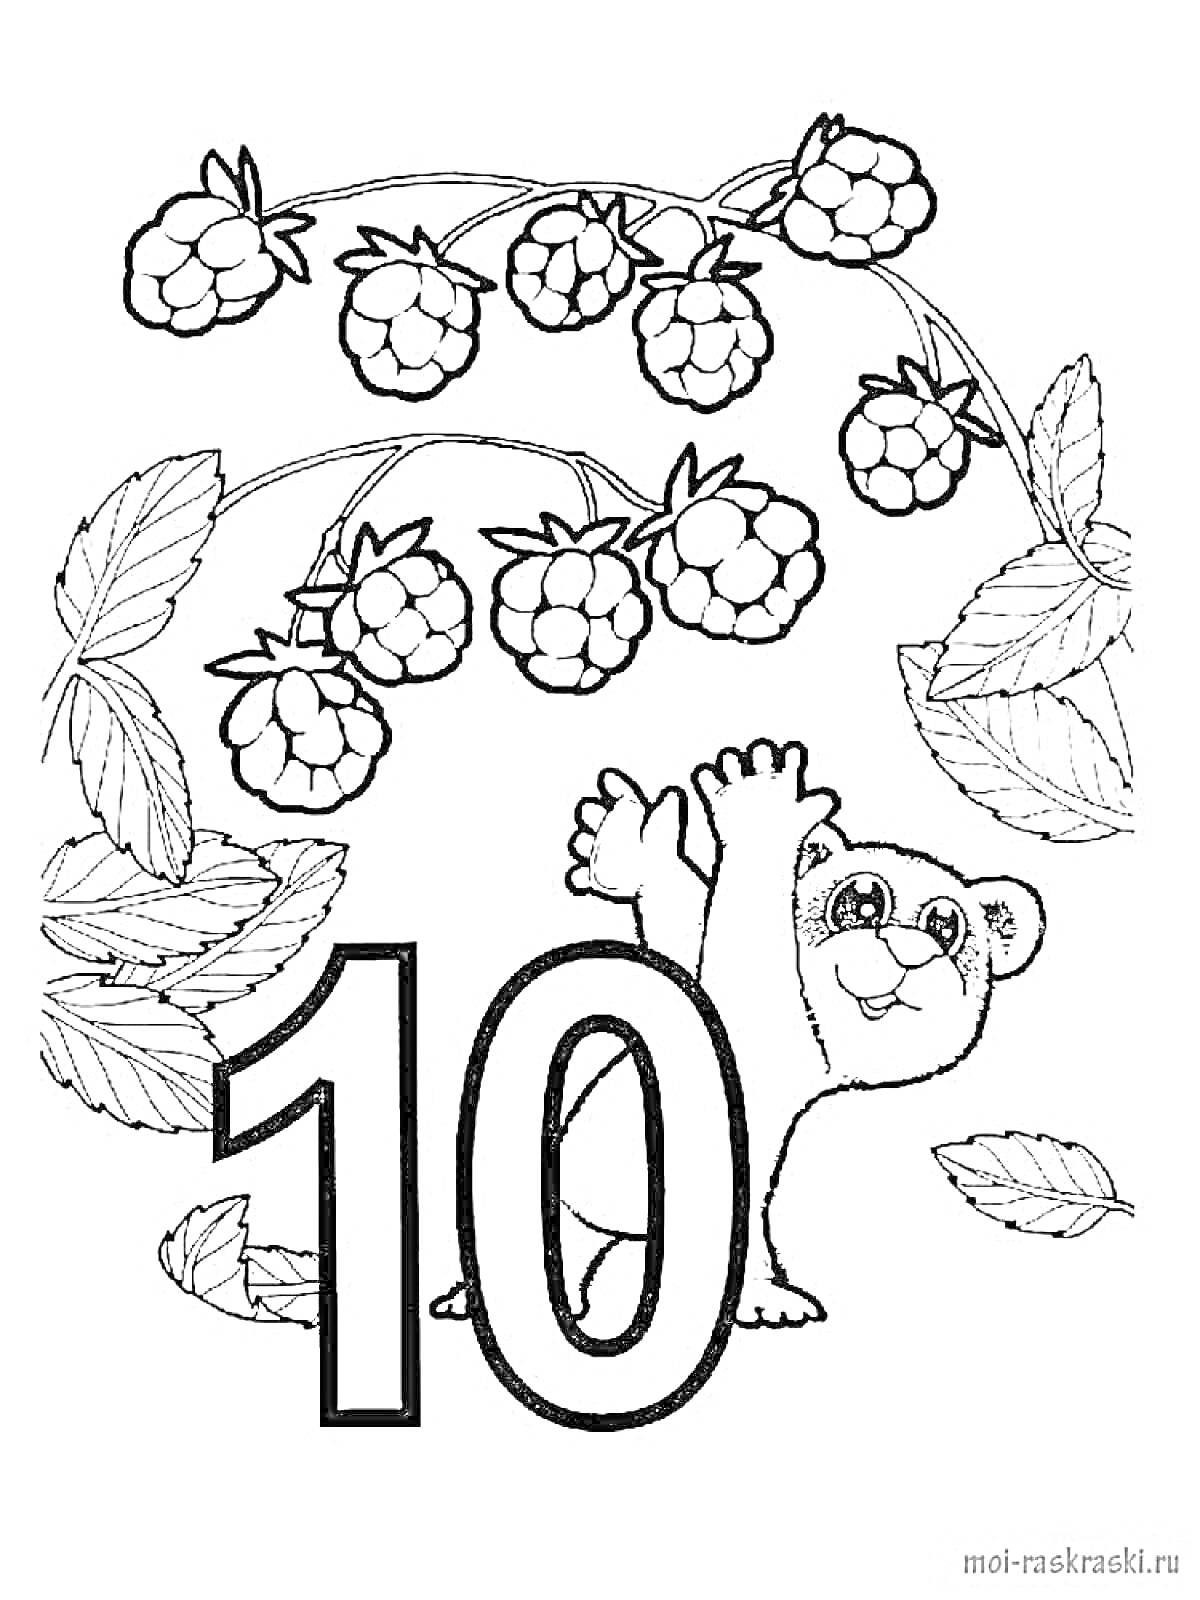 Раскраска Число 10, медвежонок, малина, листья